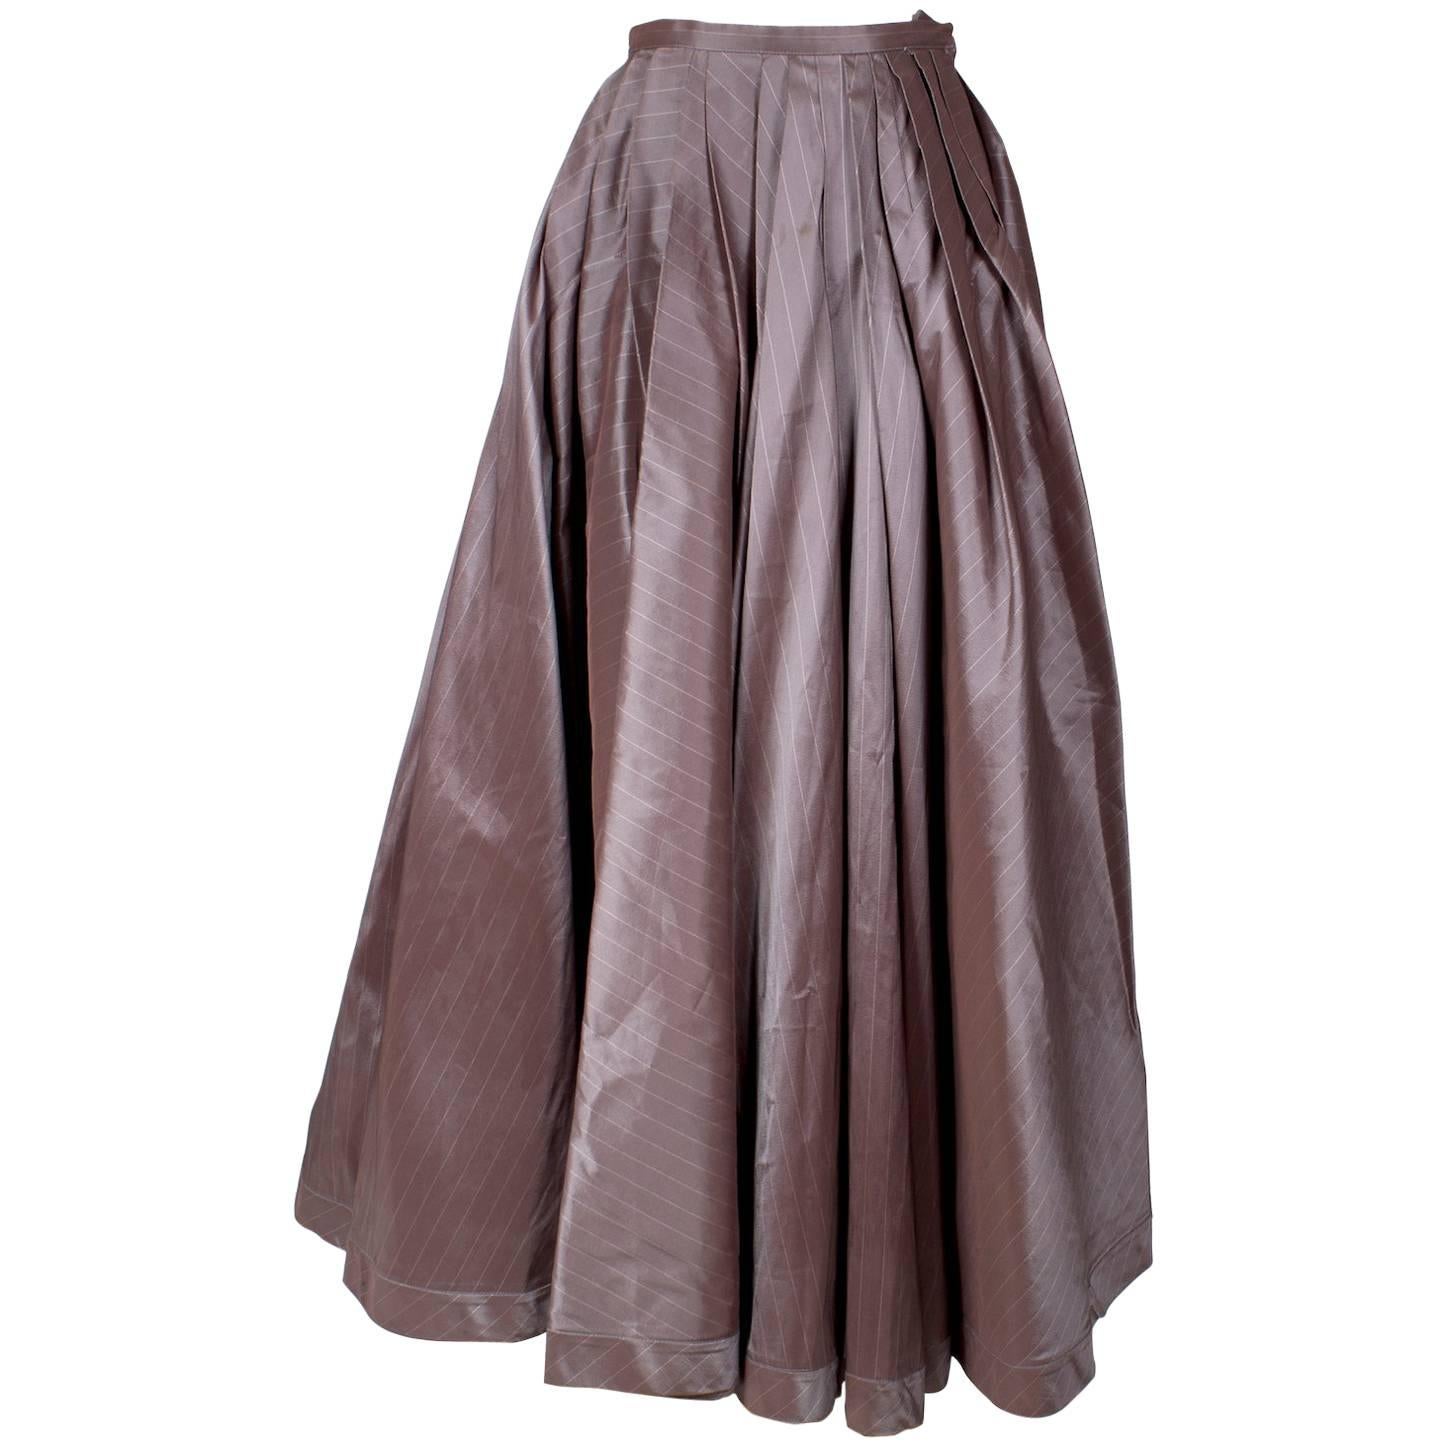 Jean Paul Gaultier Pinstrip Ball Gown Skirt circa 1990s/2000s